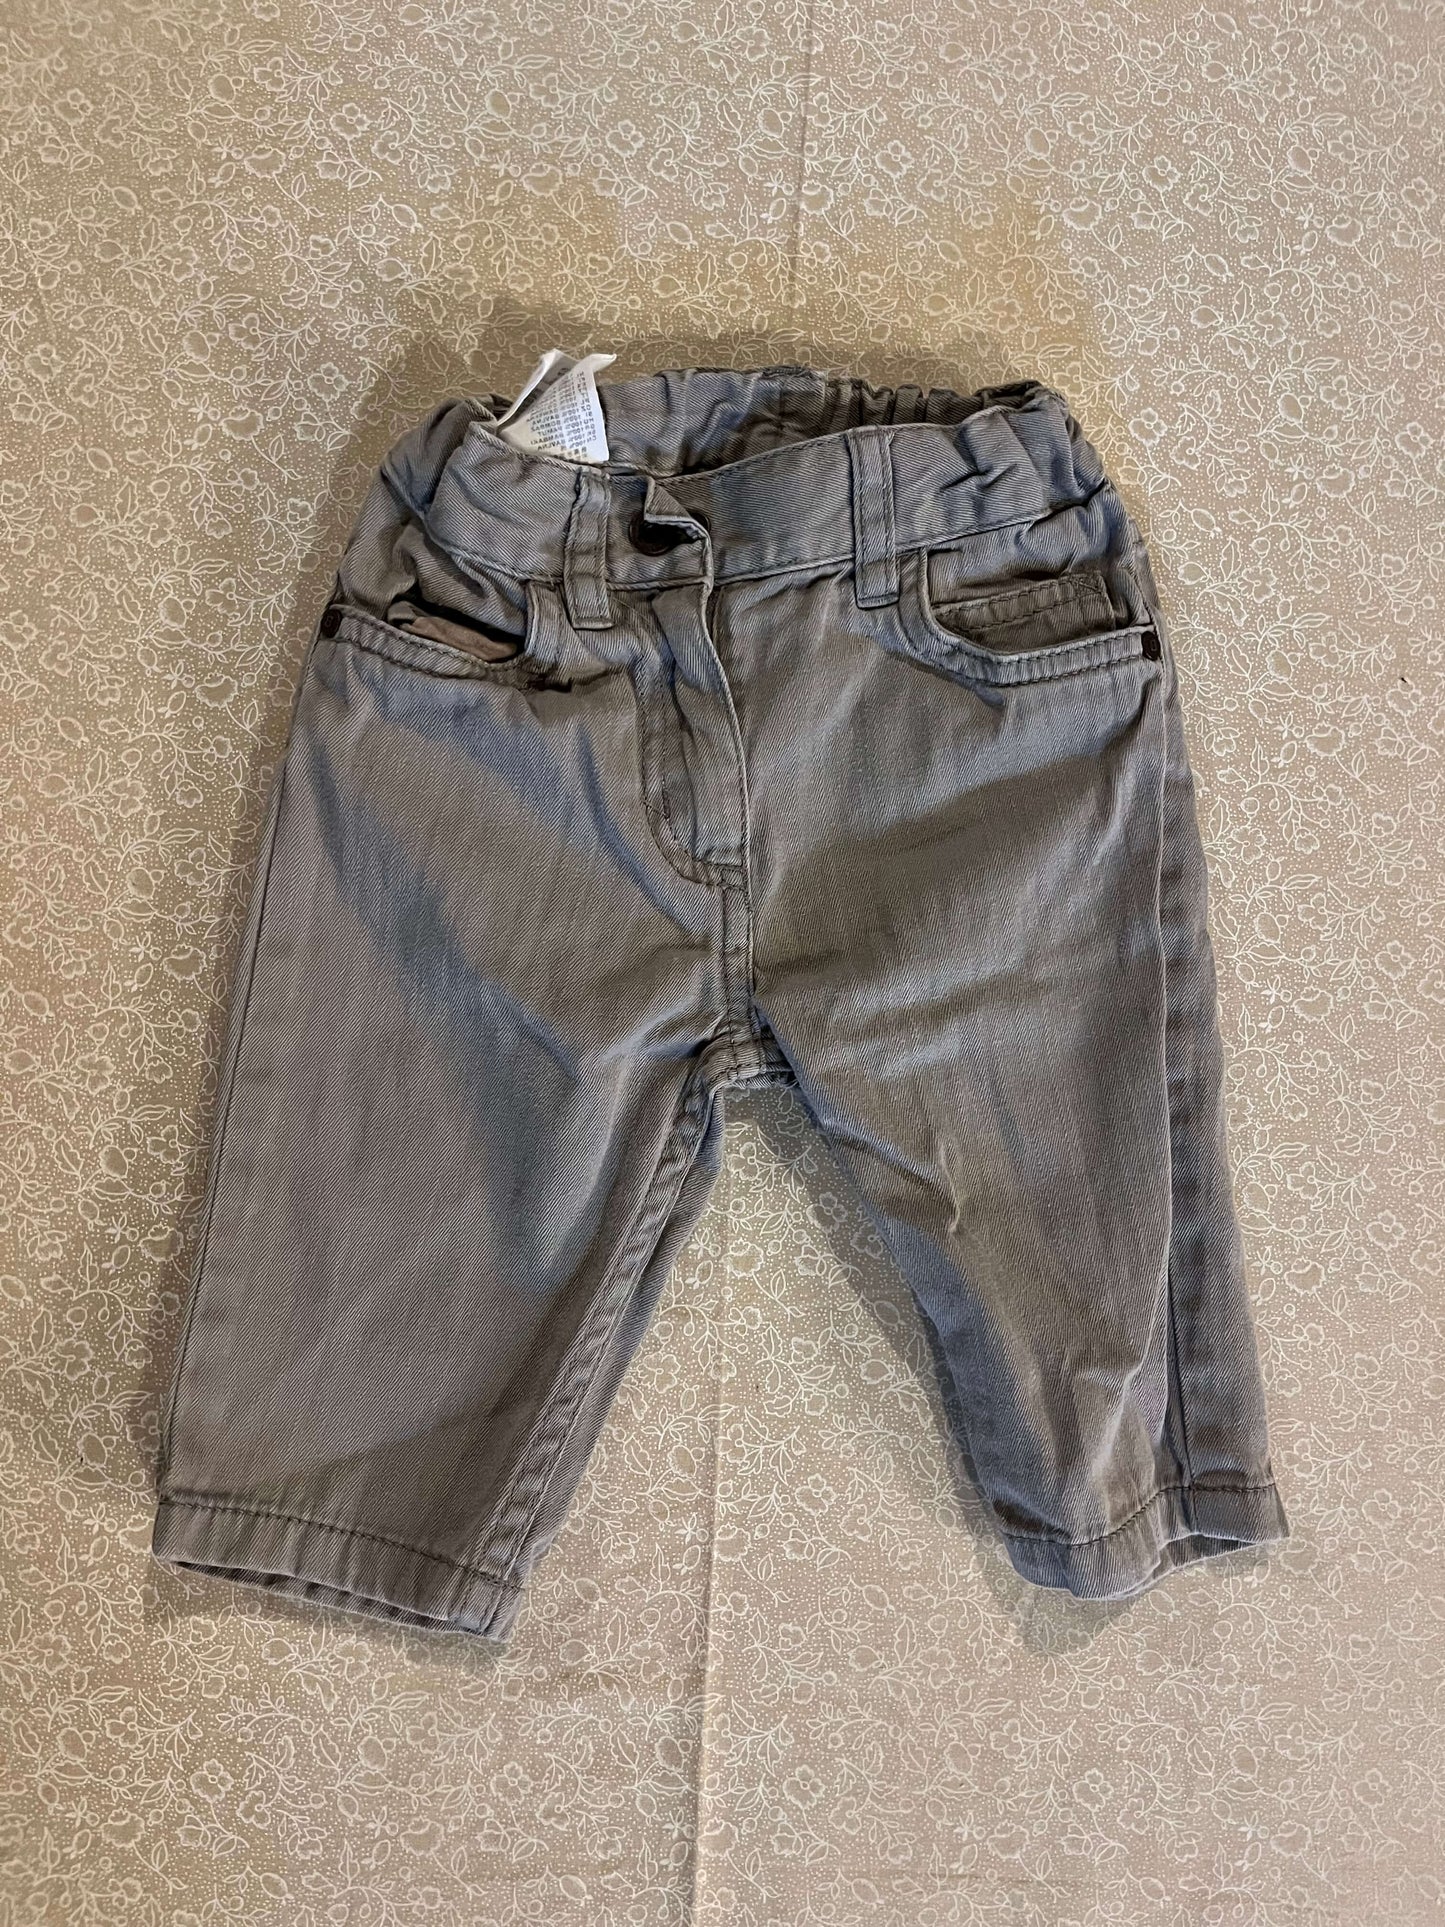 2-4-month-pants- hm-grey-khaki